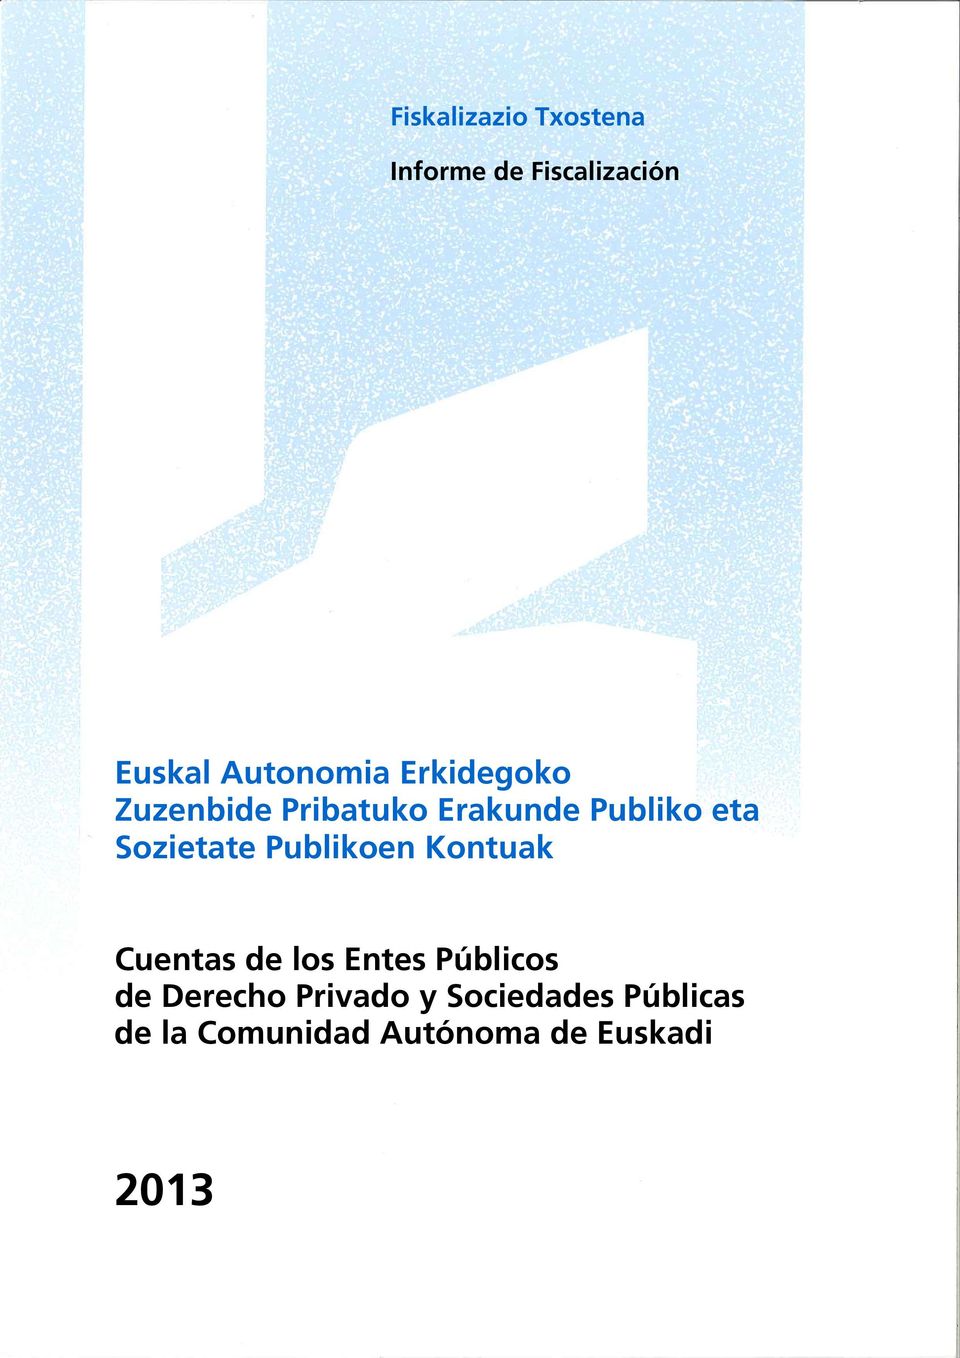 Publikoen Kontuak Cuentas de los Entes Públicos de Derecho